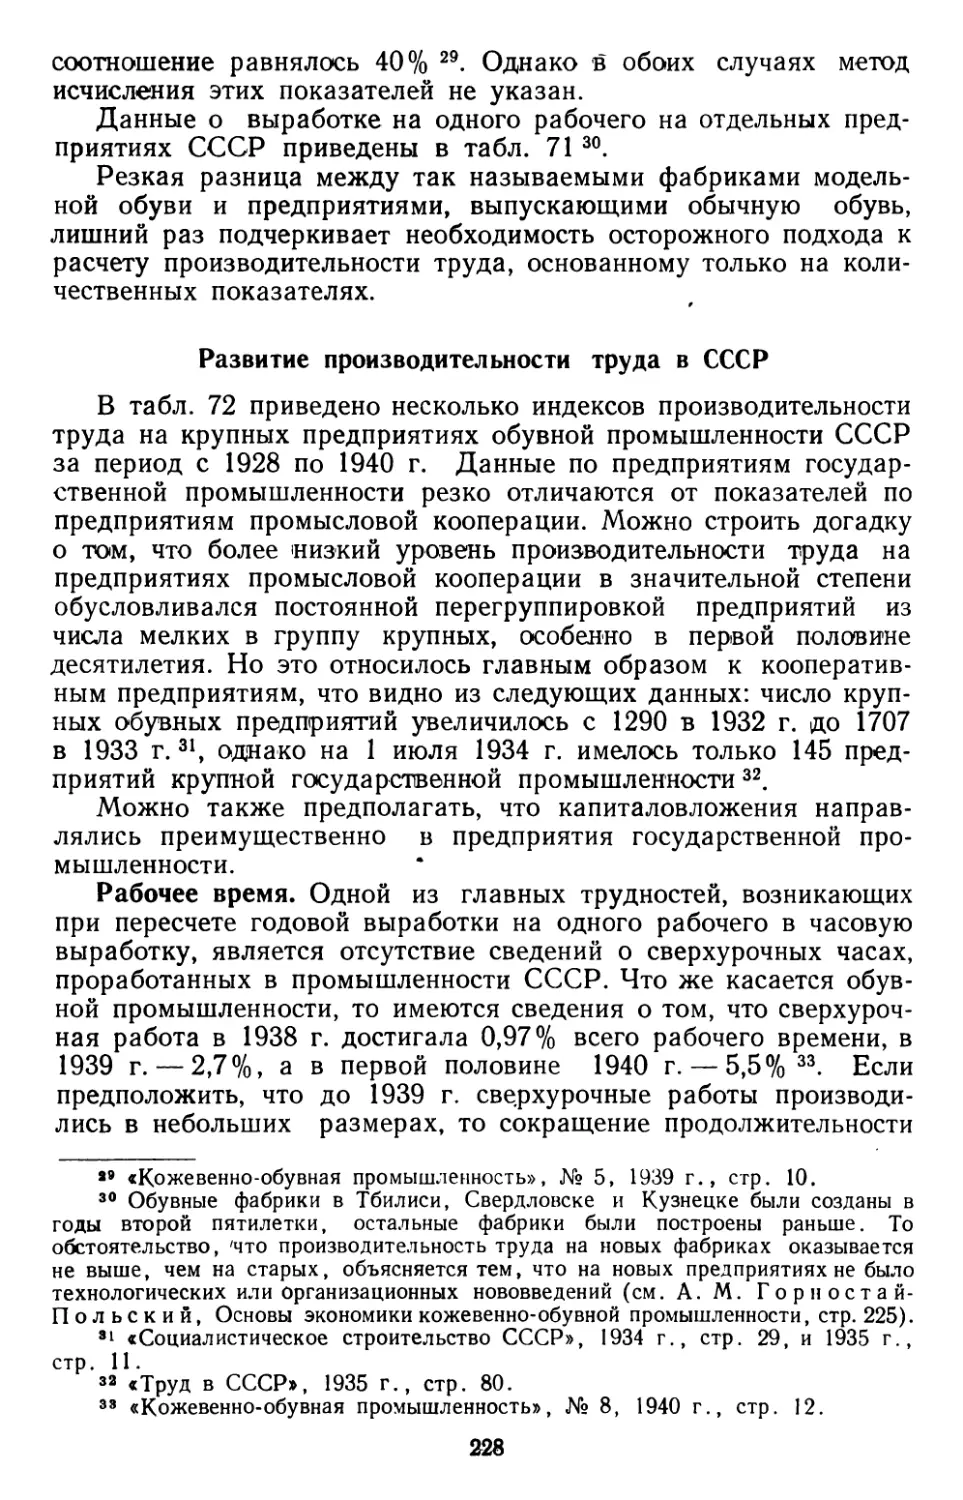 Развитие производительности труда в СССР